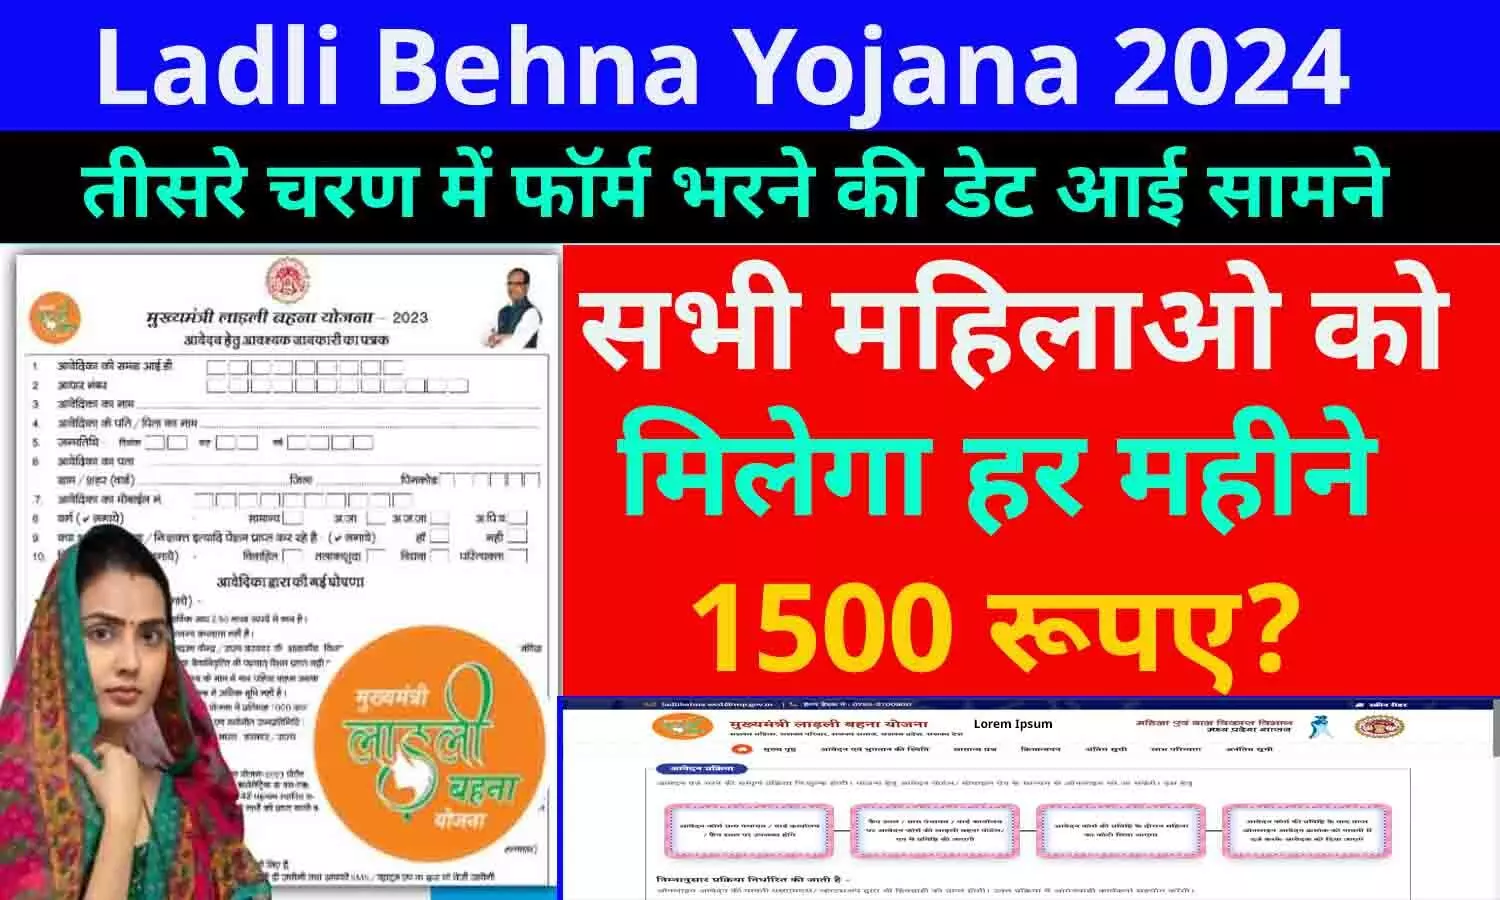 Ladli Behna Yojana 3.0 Registration Date Online Apply 2024: बड़ा ऐलान! तीसरे चरण में फॉर्म भरने की डेट आई सामने, सभी महिलाओ को मिलेगा हर महीने 1500 रूपए?